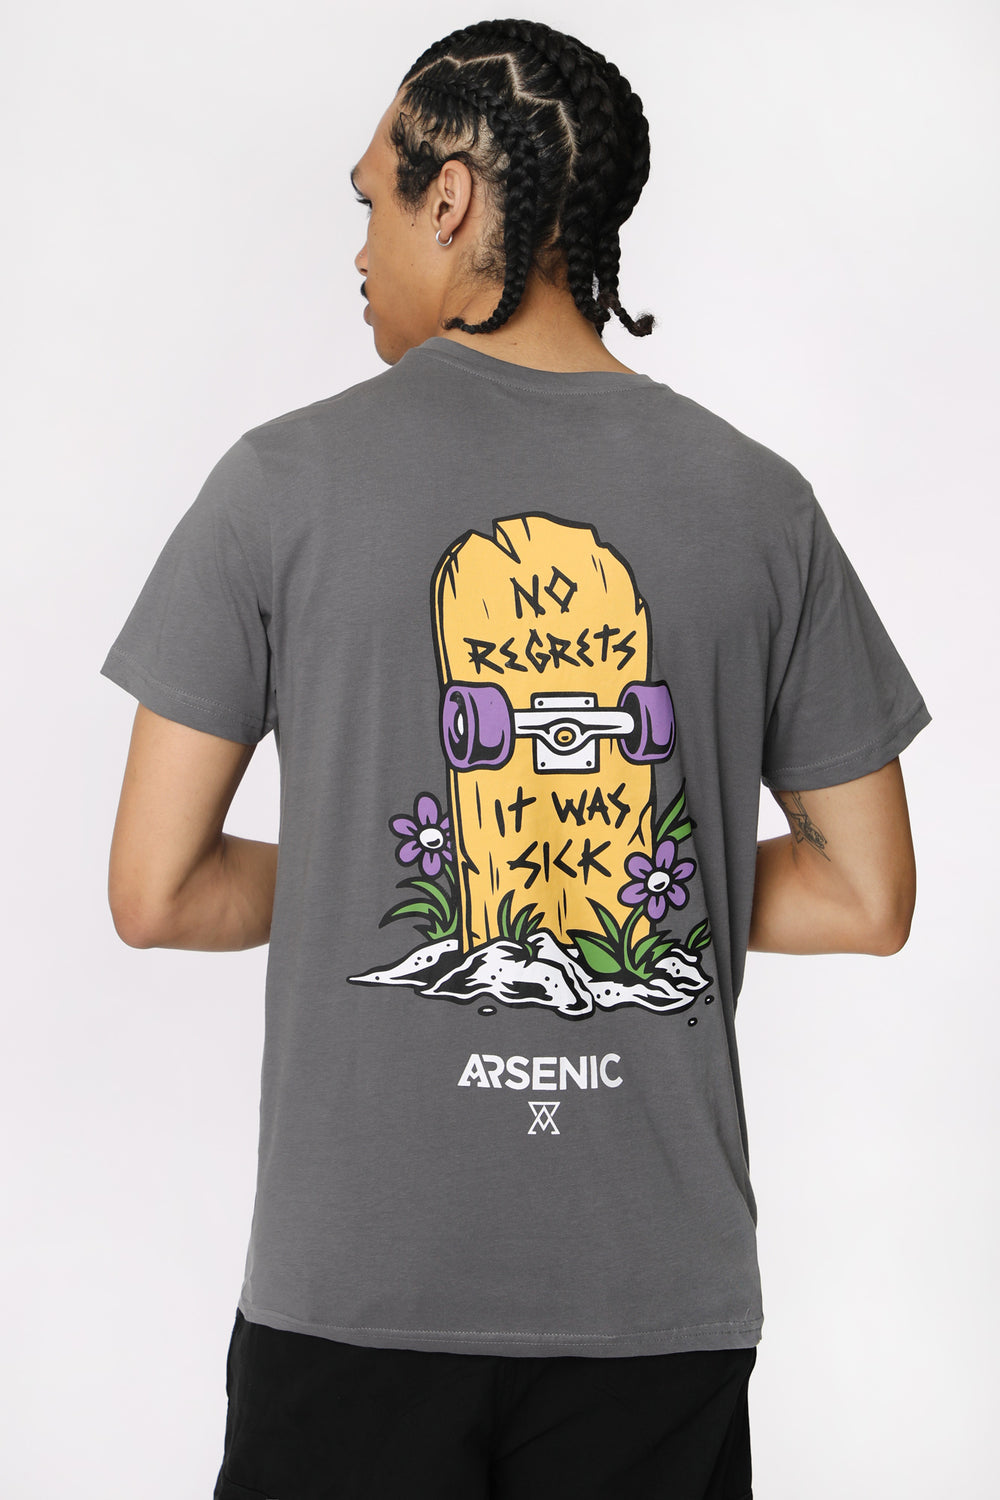 T-Shirt Imprimé No Regrets Arsenic Homme T-Shirt Imprimé No Regrets Arsenic Homme